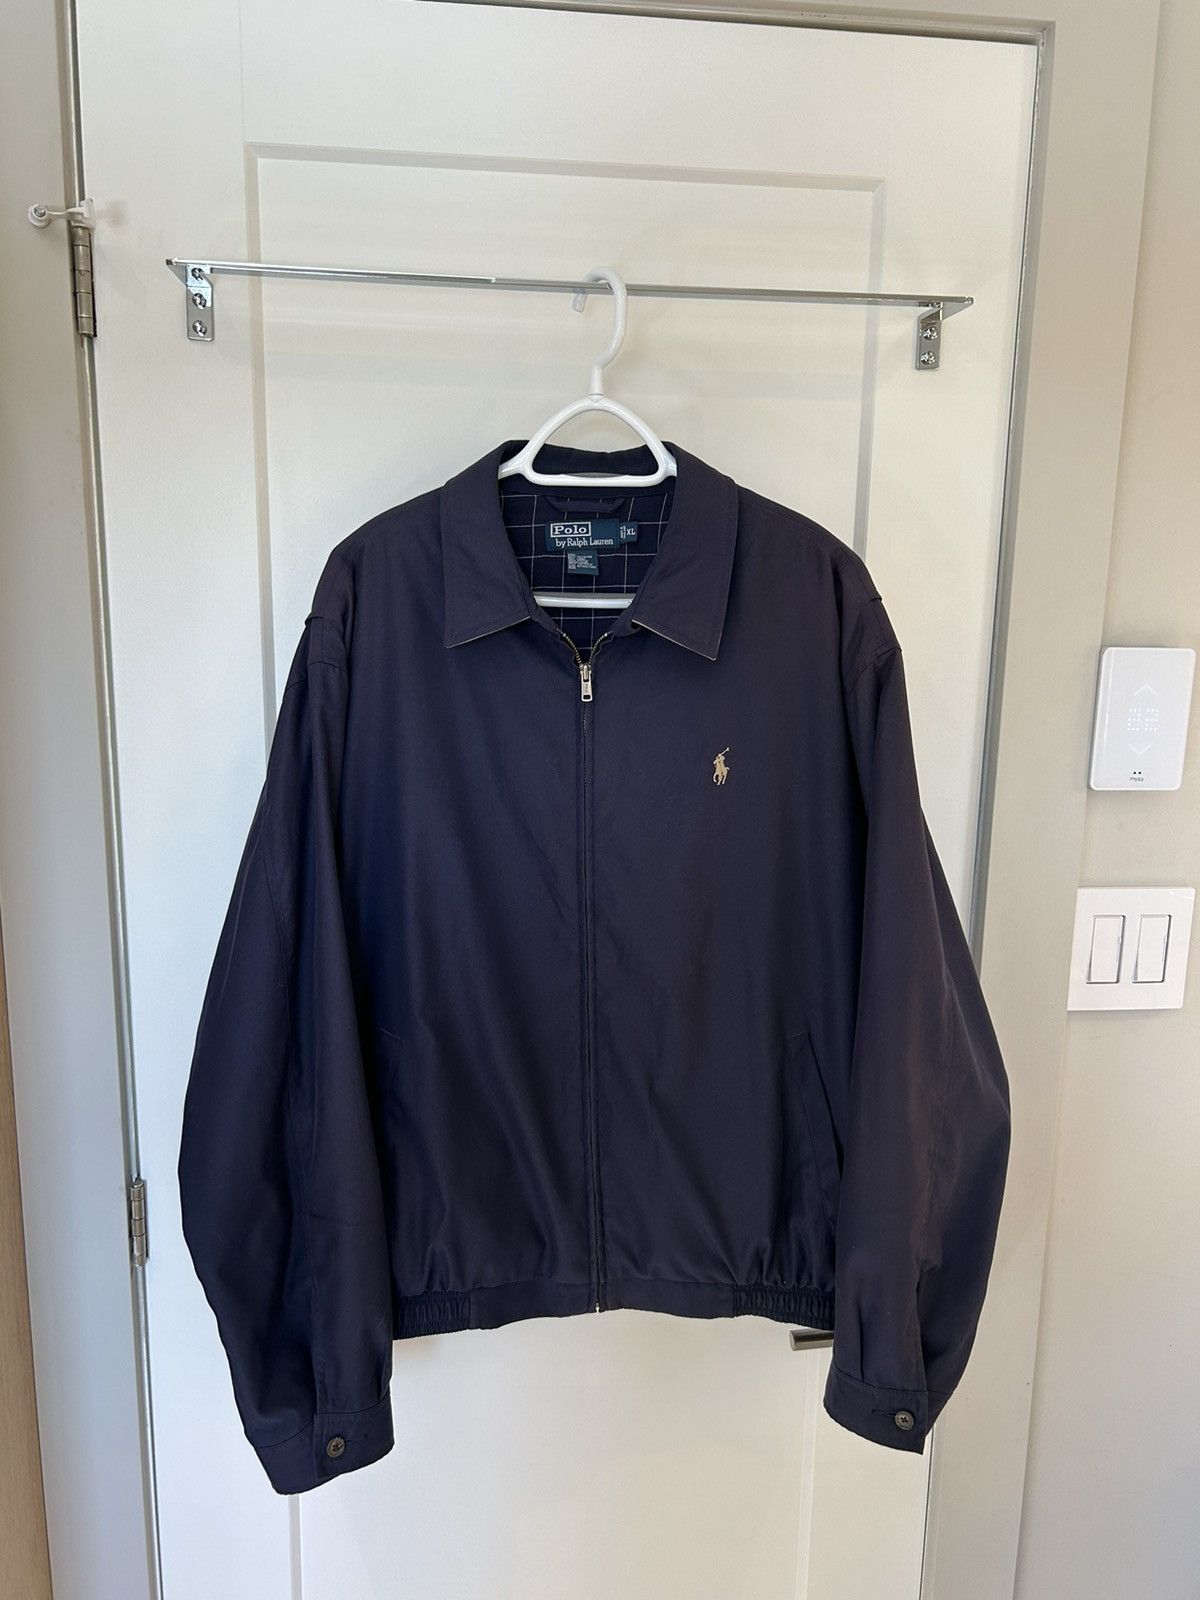 Polo Ralph Lauren Polo Ralph Lauren navy jacket | Grailed